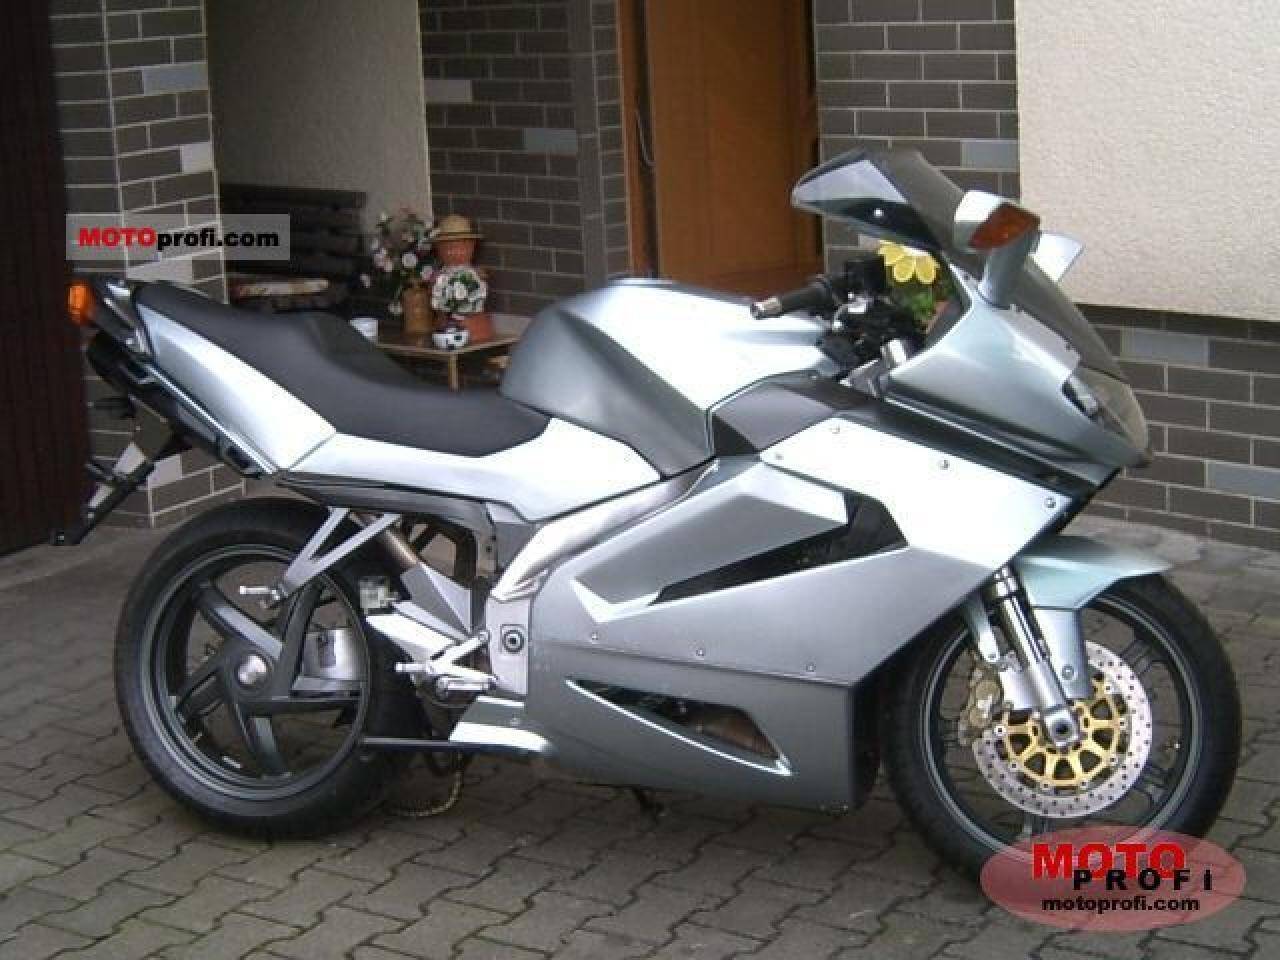 Мотоцикл aprilia rst 1000 futura 2003 - расписываем все нюансы